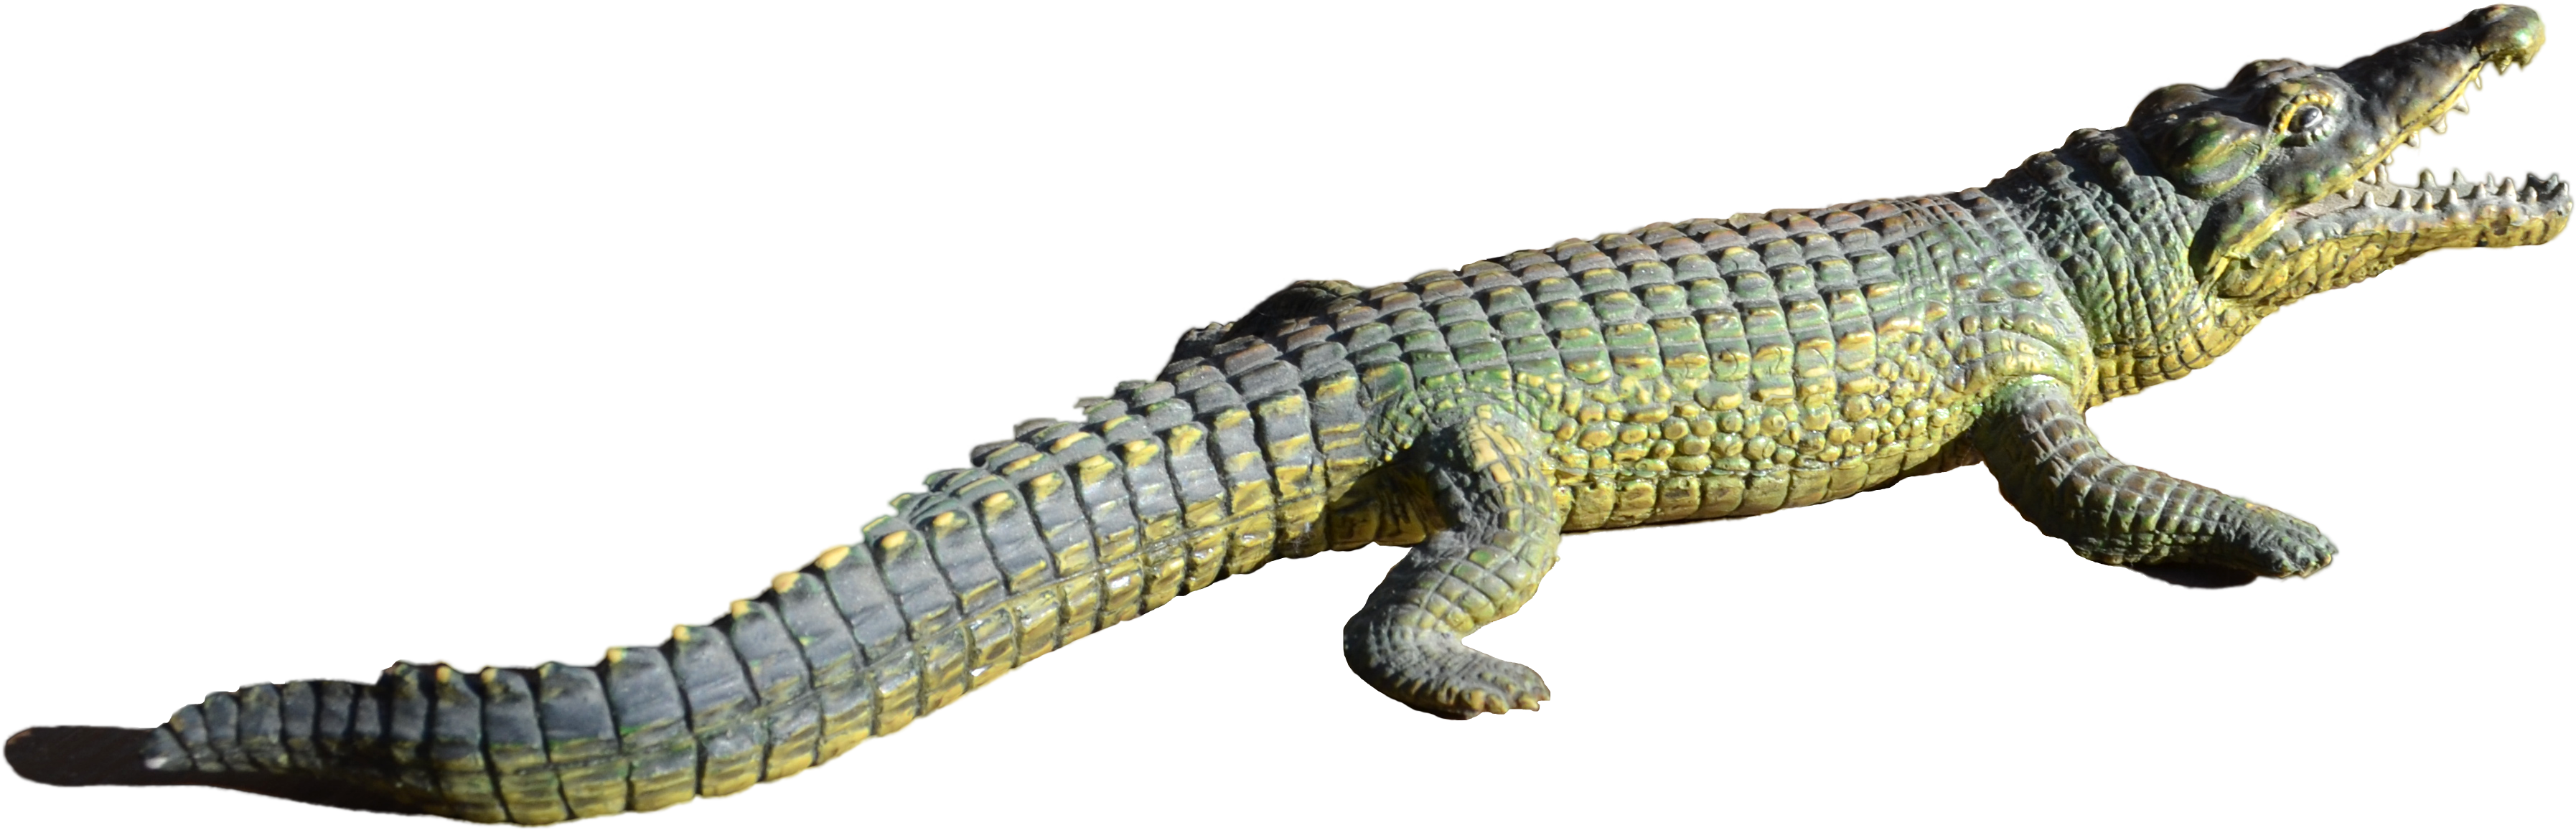 Alligator PNG Images HD